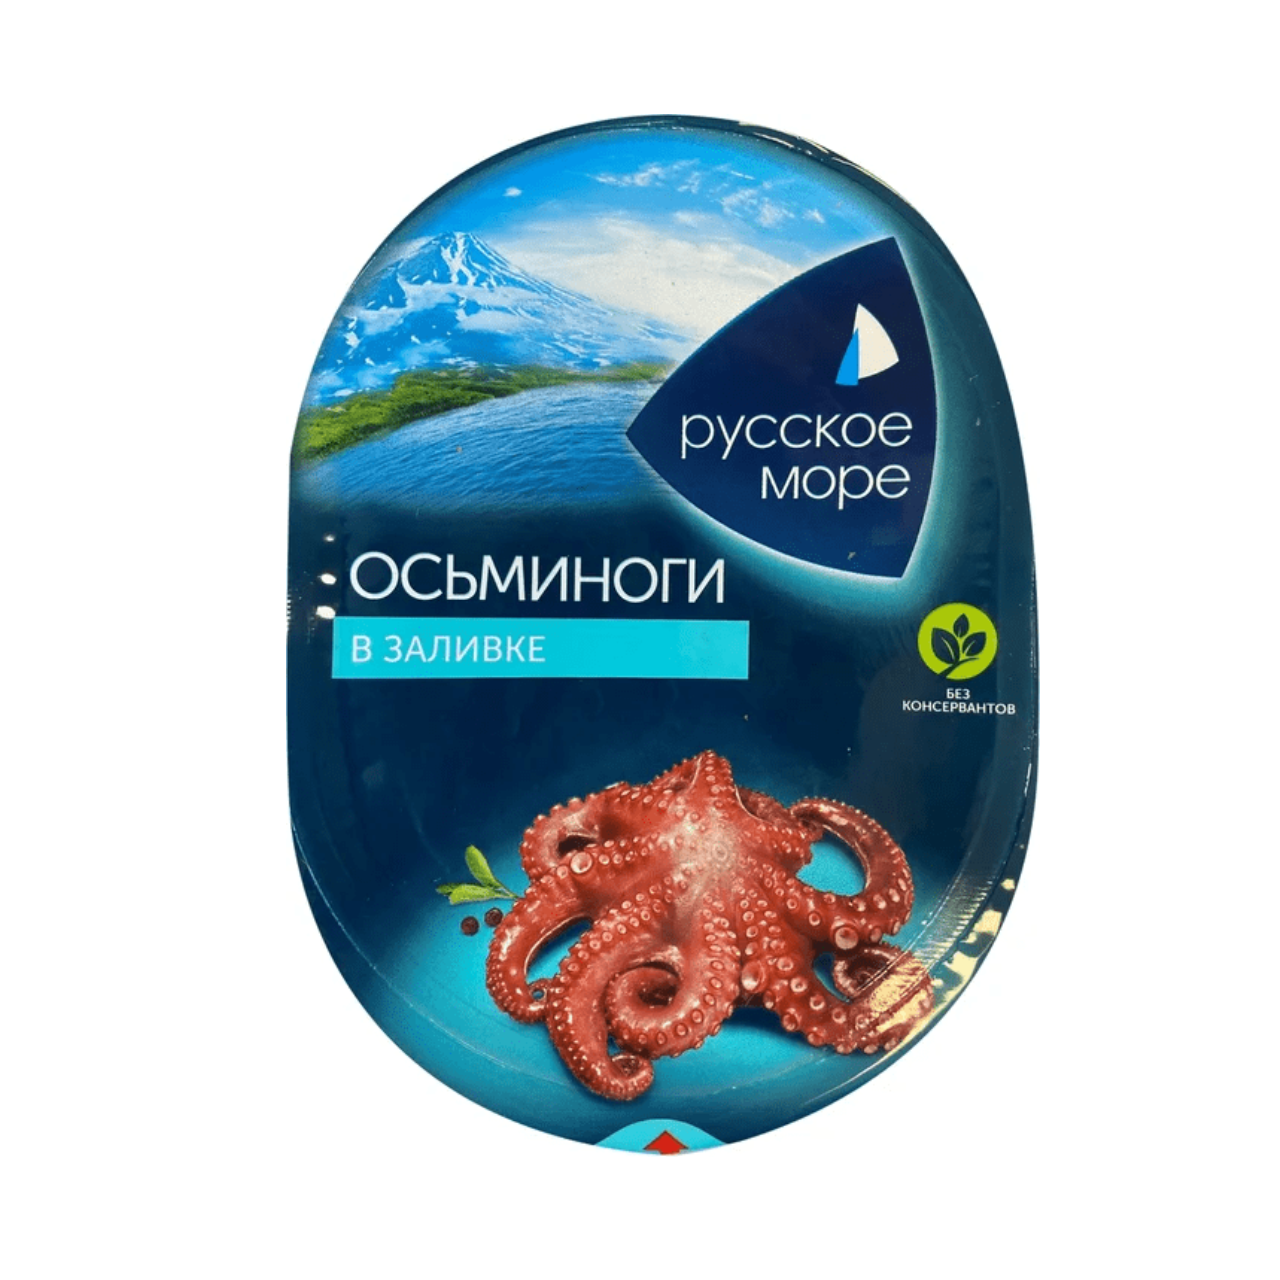 Осьминоги Русское море 180 г в заливке